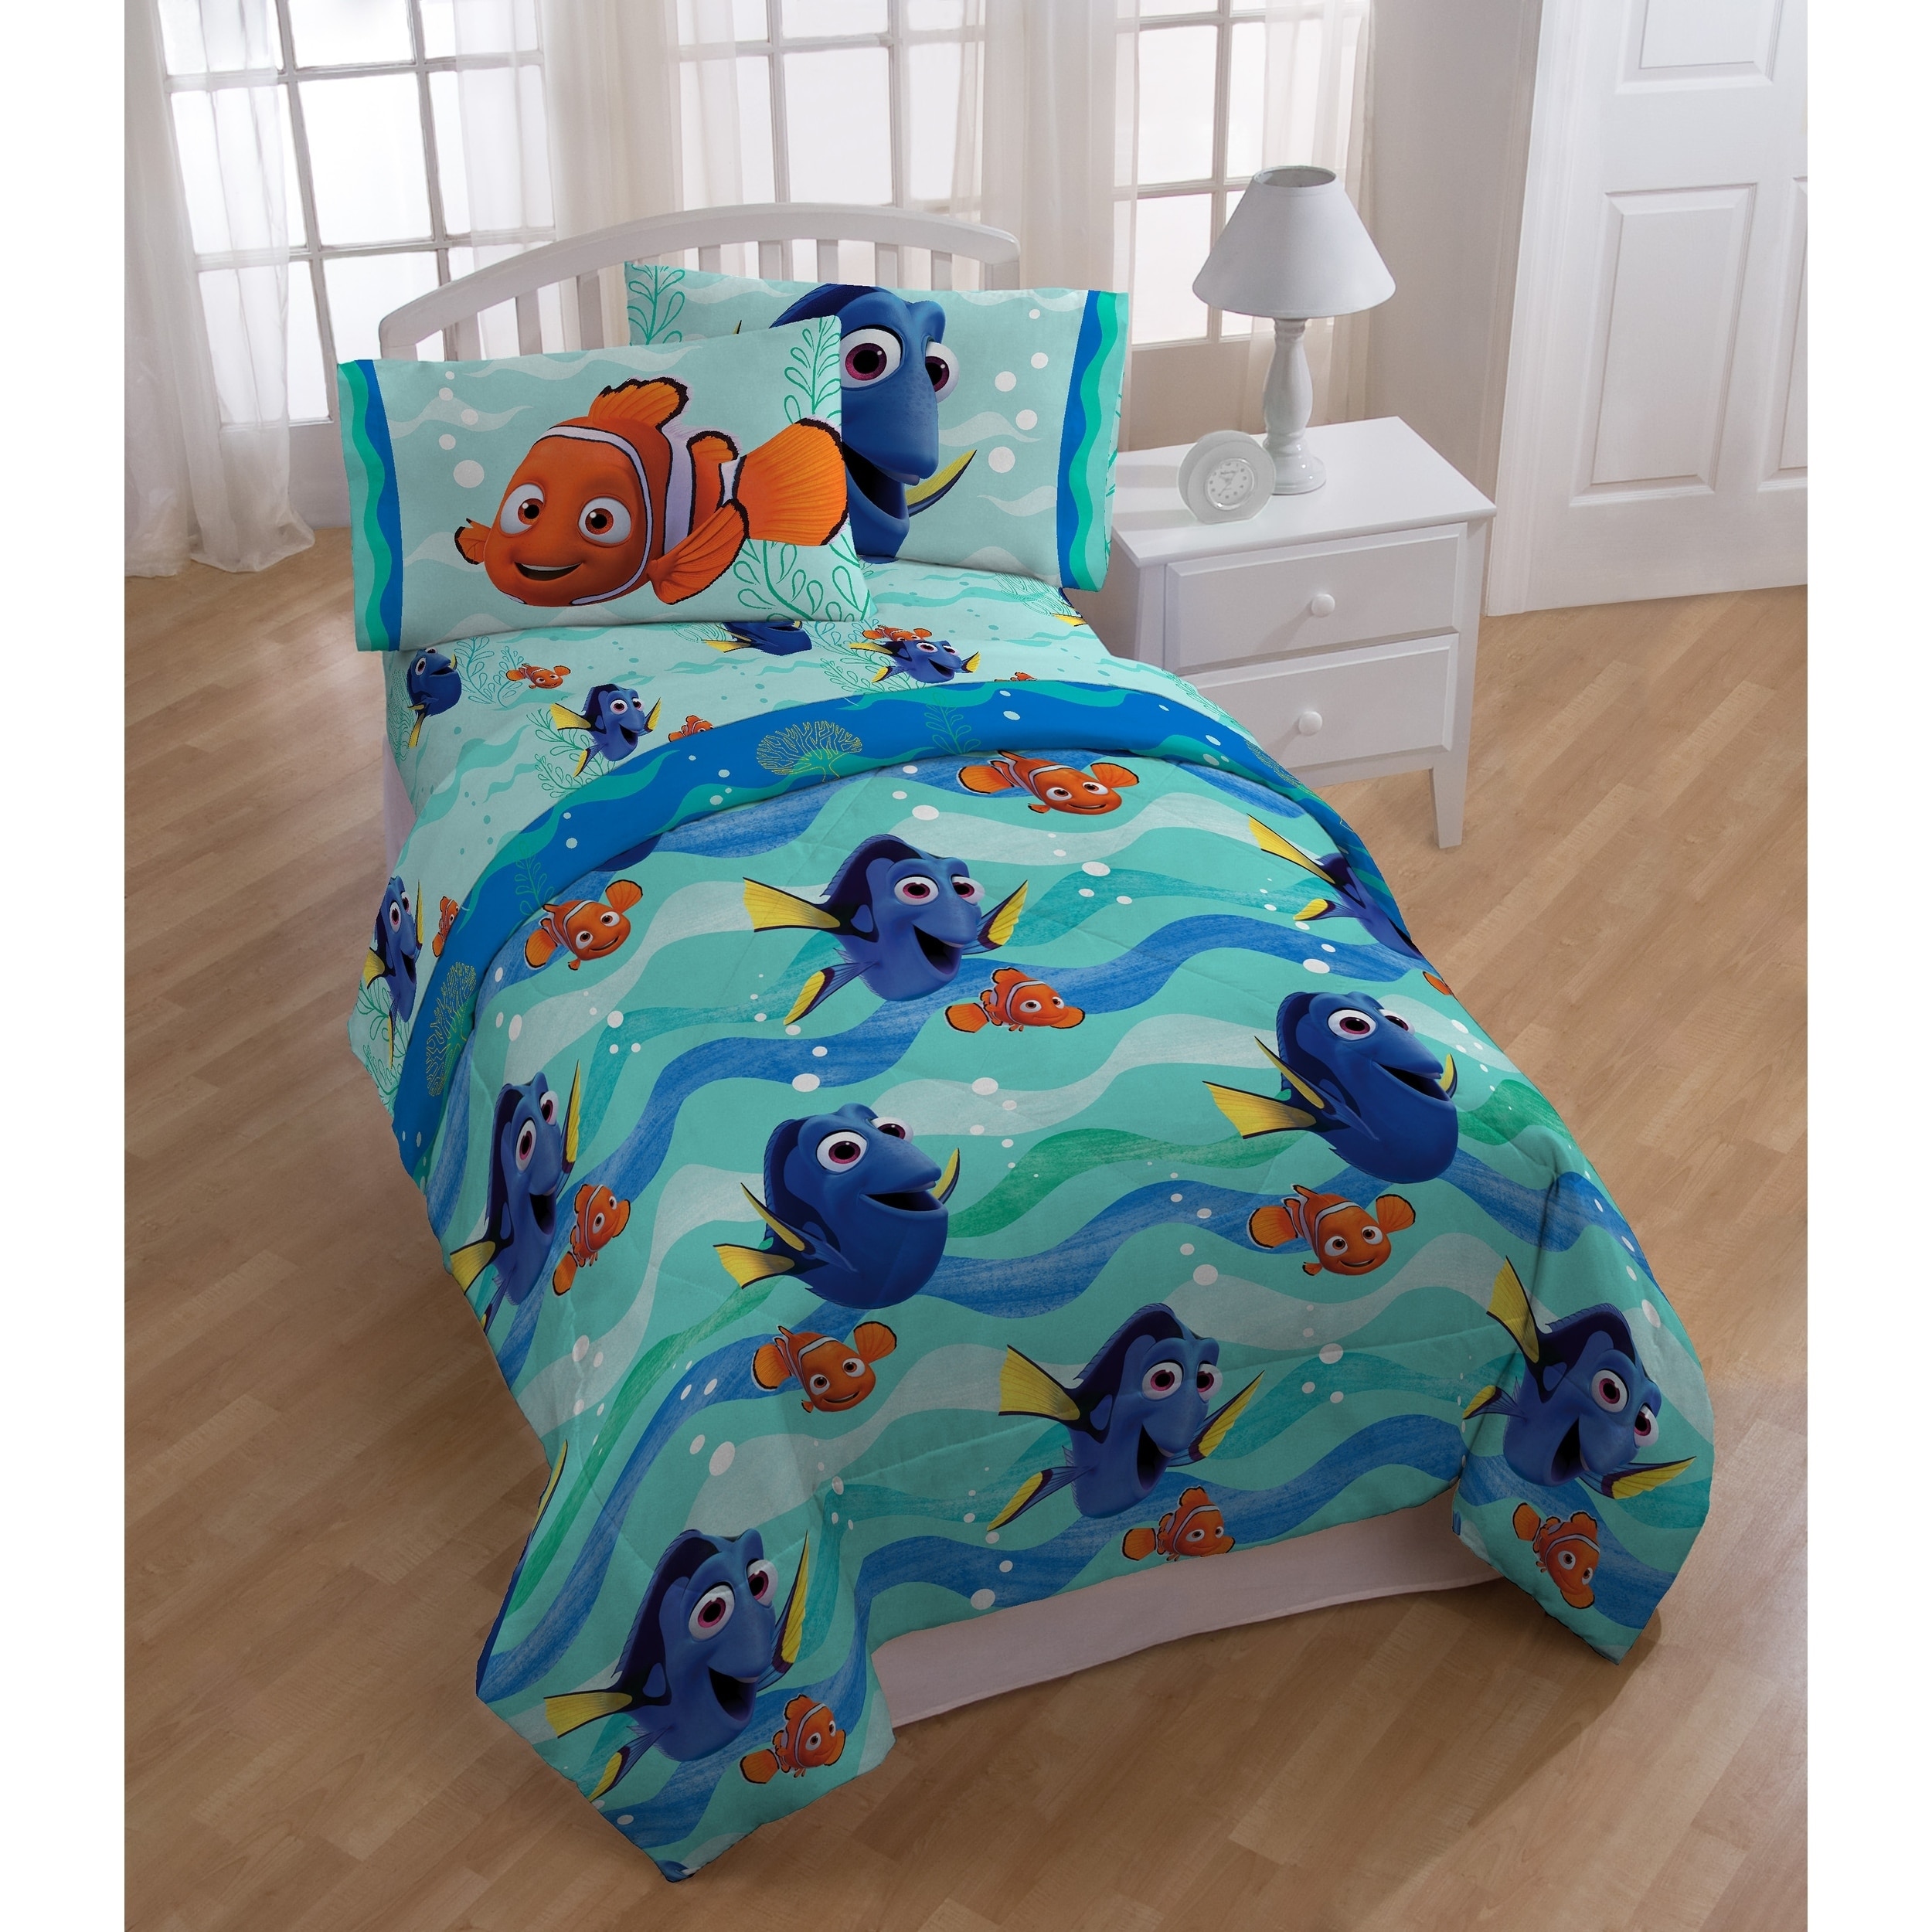 Shop Disney Pixar Finding Dory Splashy Twin Reversible Comforter